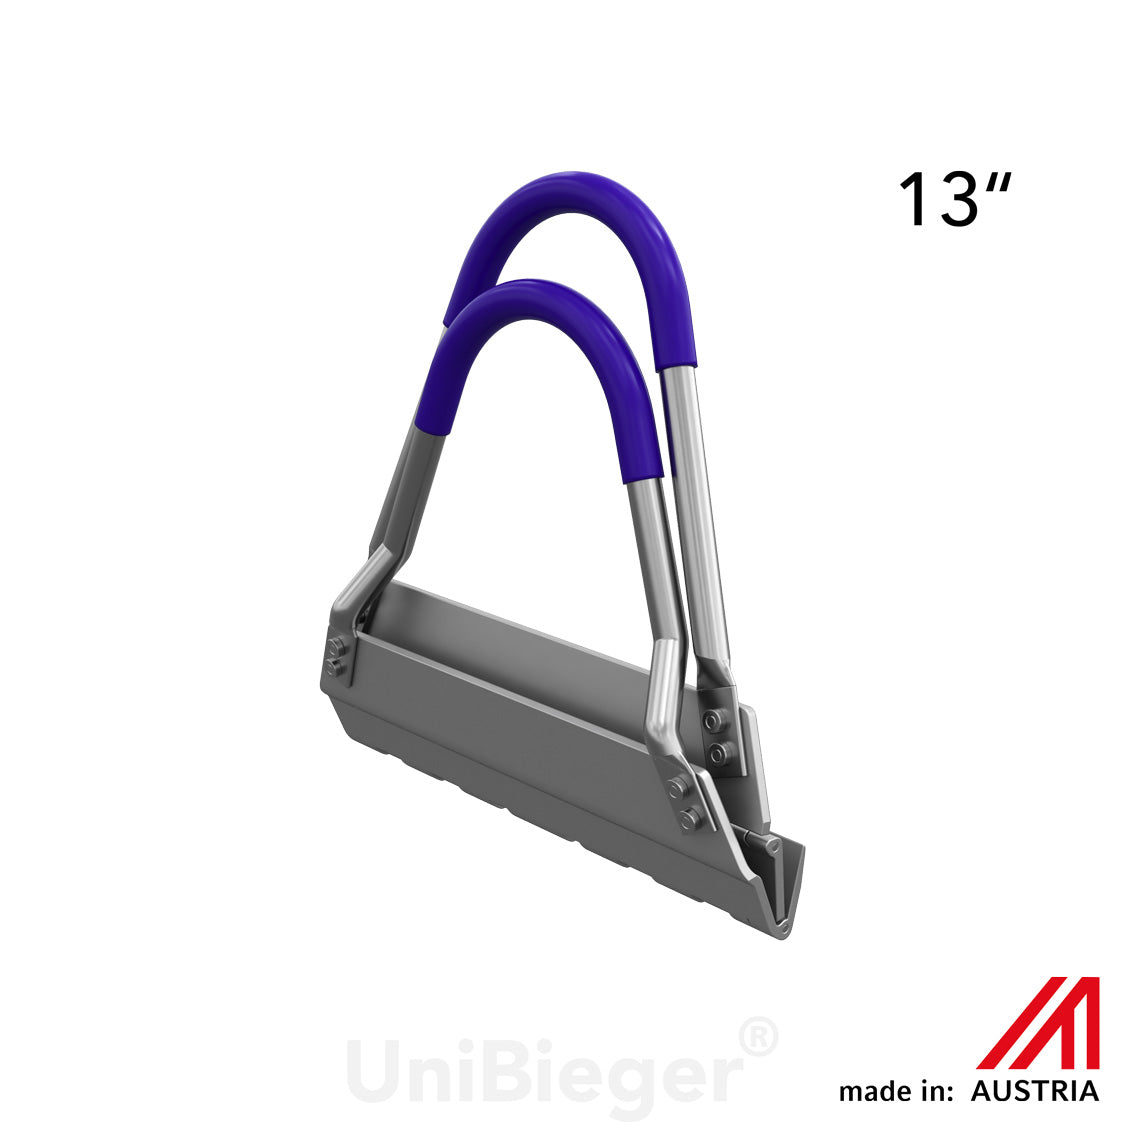 UniBieger® model T inch